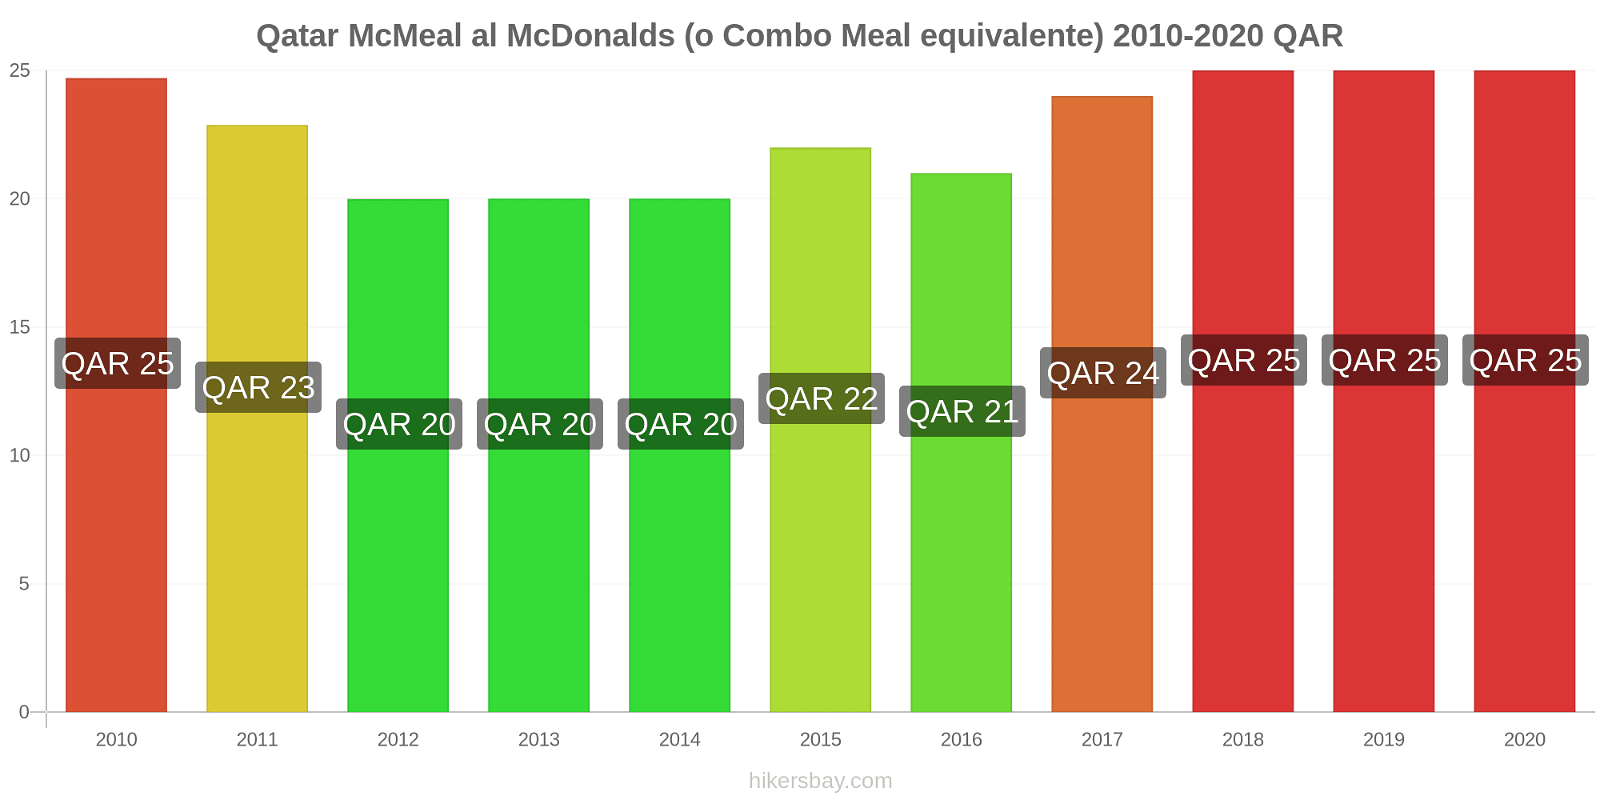 Qatar variazioni di prezzo McMeal al McDonalds (o in un equivalente fastfood) hikersbay.com